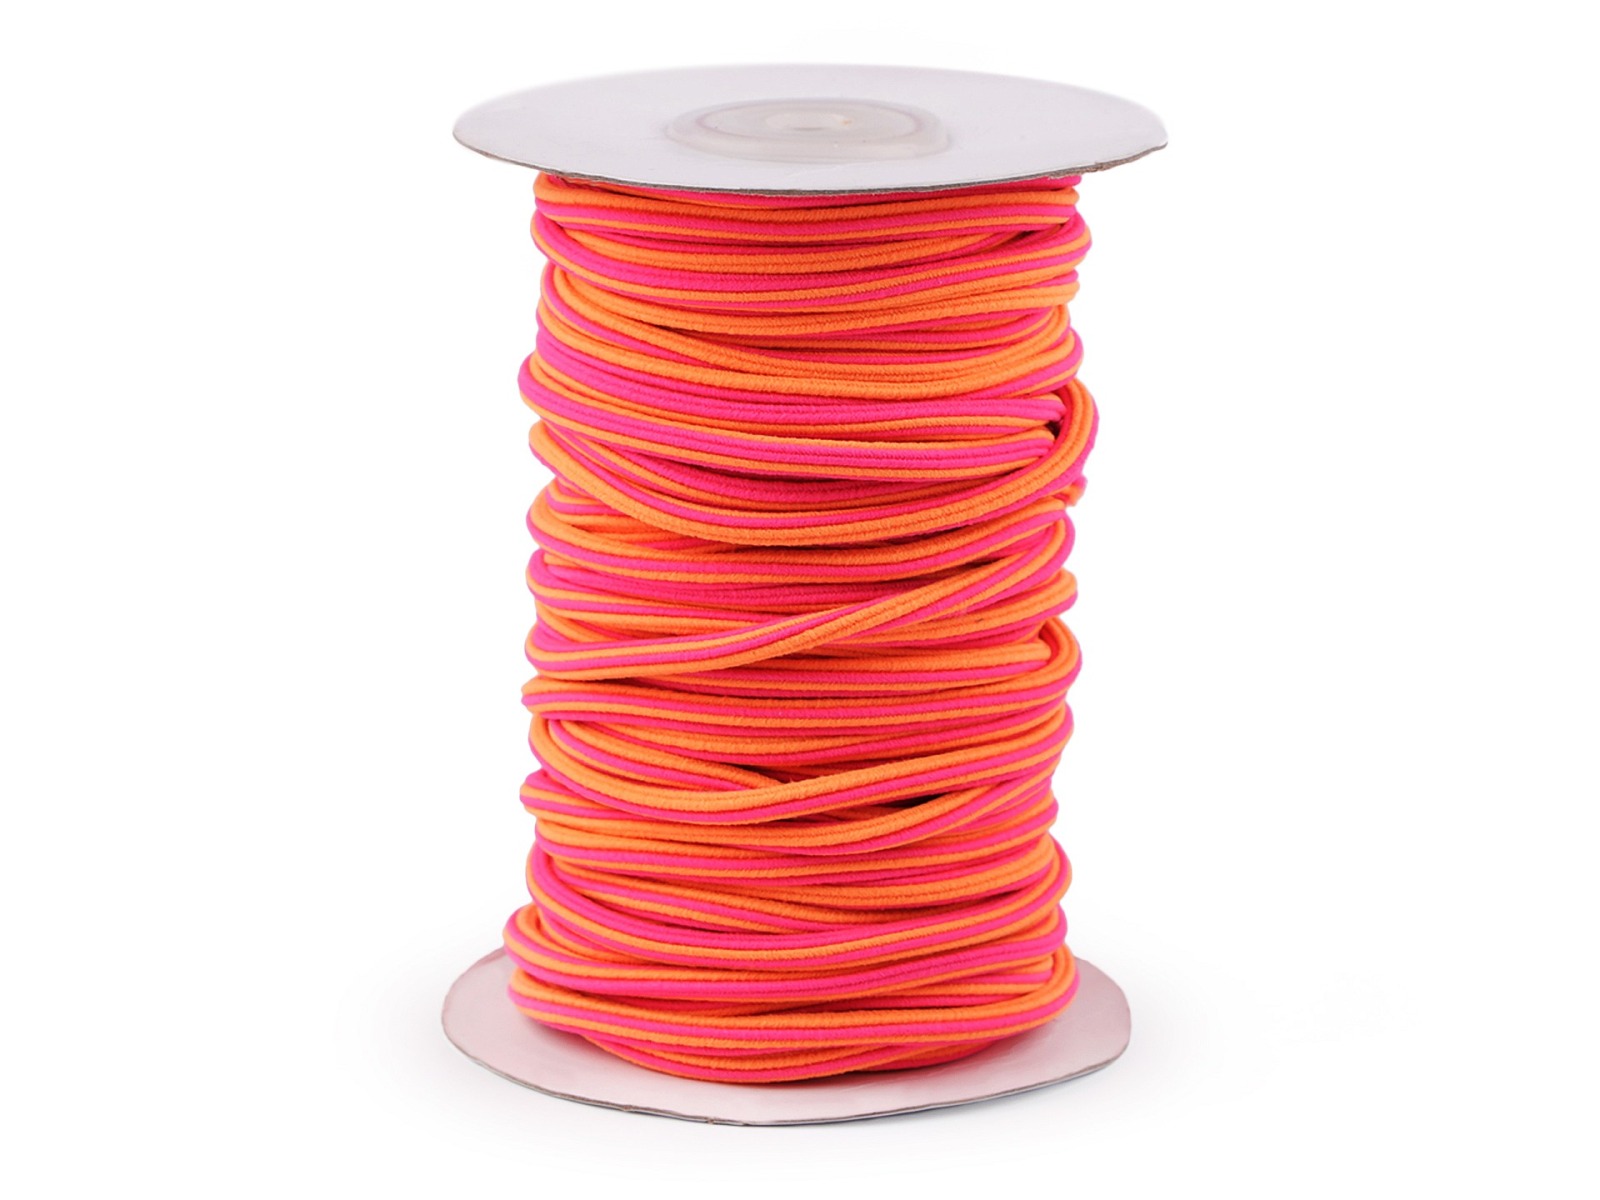 1,25 EUR/m - 2 m Gummi für Hoodies Kapuzen und Hosen - pink neon orange - Rundgummi 5 mm